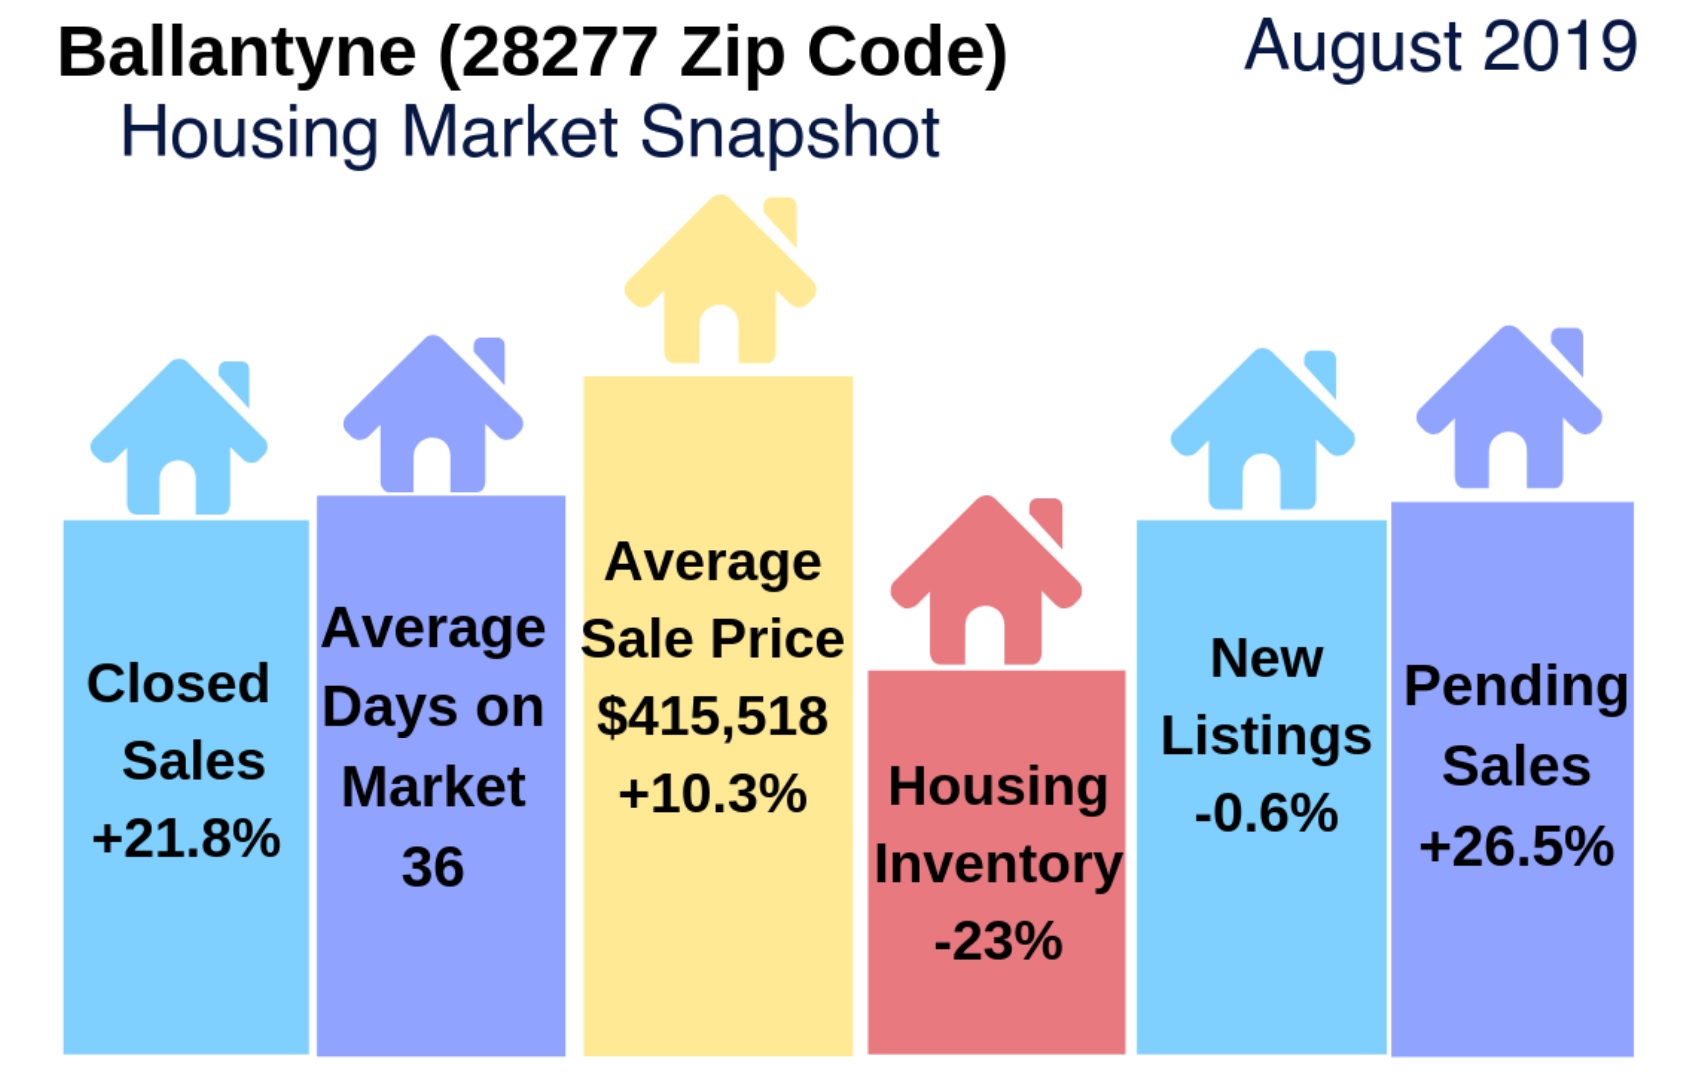 Ballantyne (28277 Zip Code) Real Estate Report: August 2019